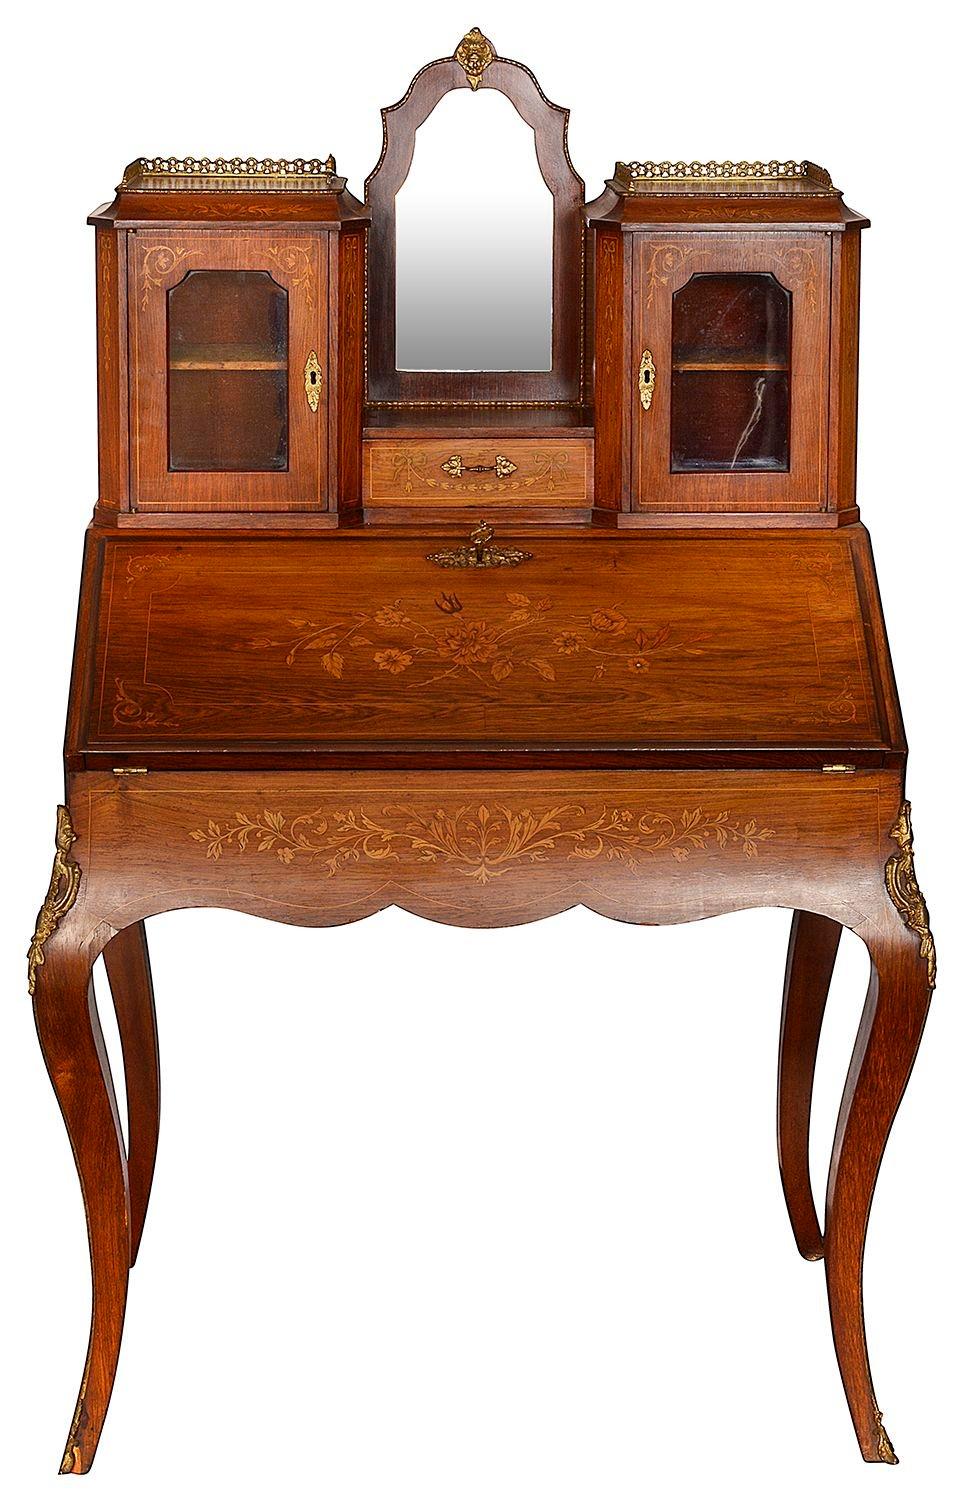 Eine gute Qualität späten 19. Jahrhundert Französisch Rosenholz eingelegt Bonheur Du Jour, mit verglasten Schränke und Spiegel oben. Ein Büro mit Sturzfront, das sich öffnen lässt, um Fächer, Schubladen und eine eingelassene Lederschreibplatte zu